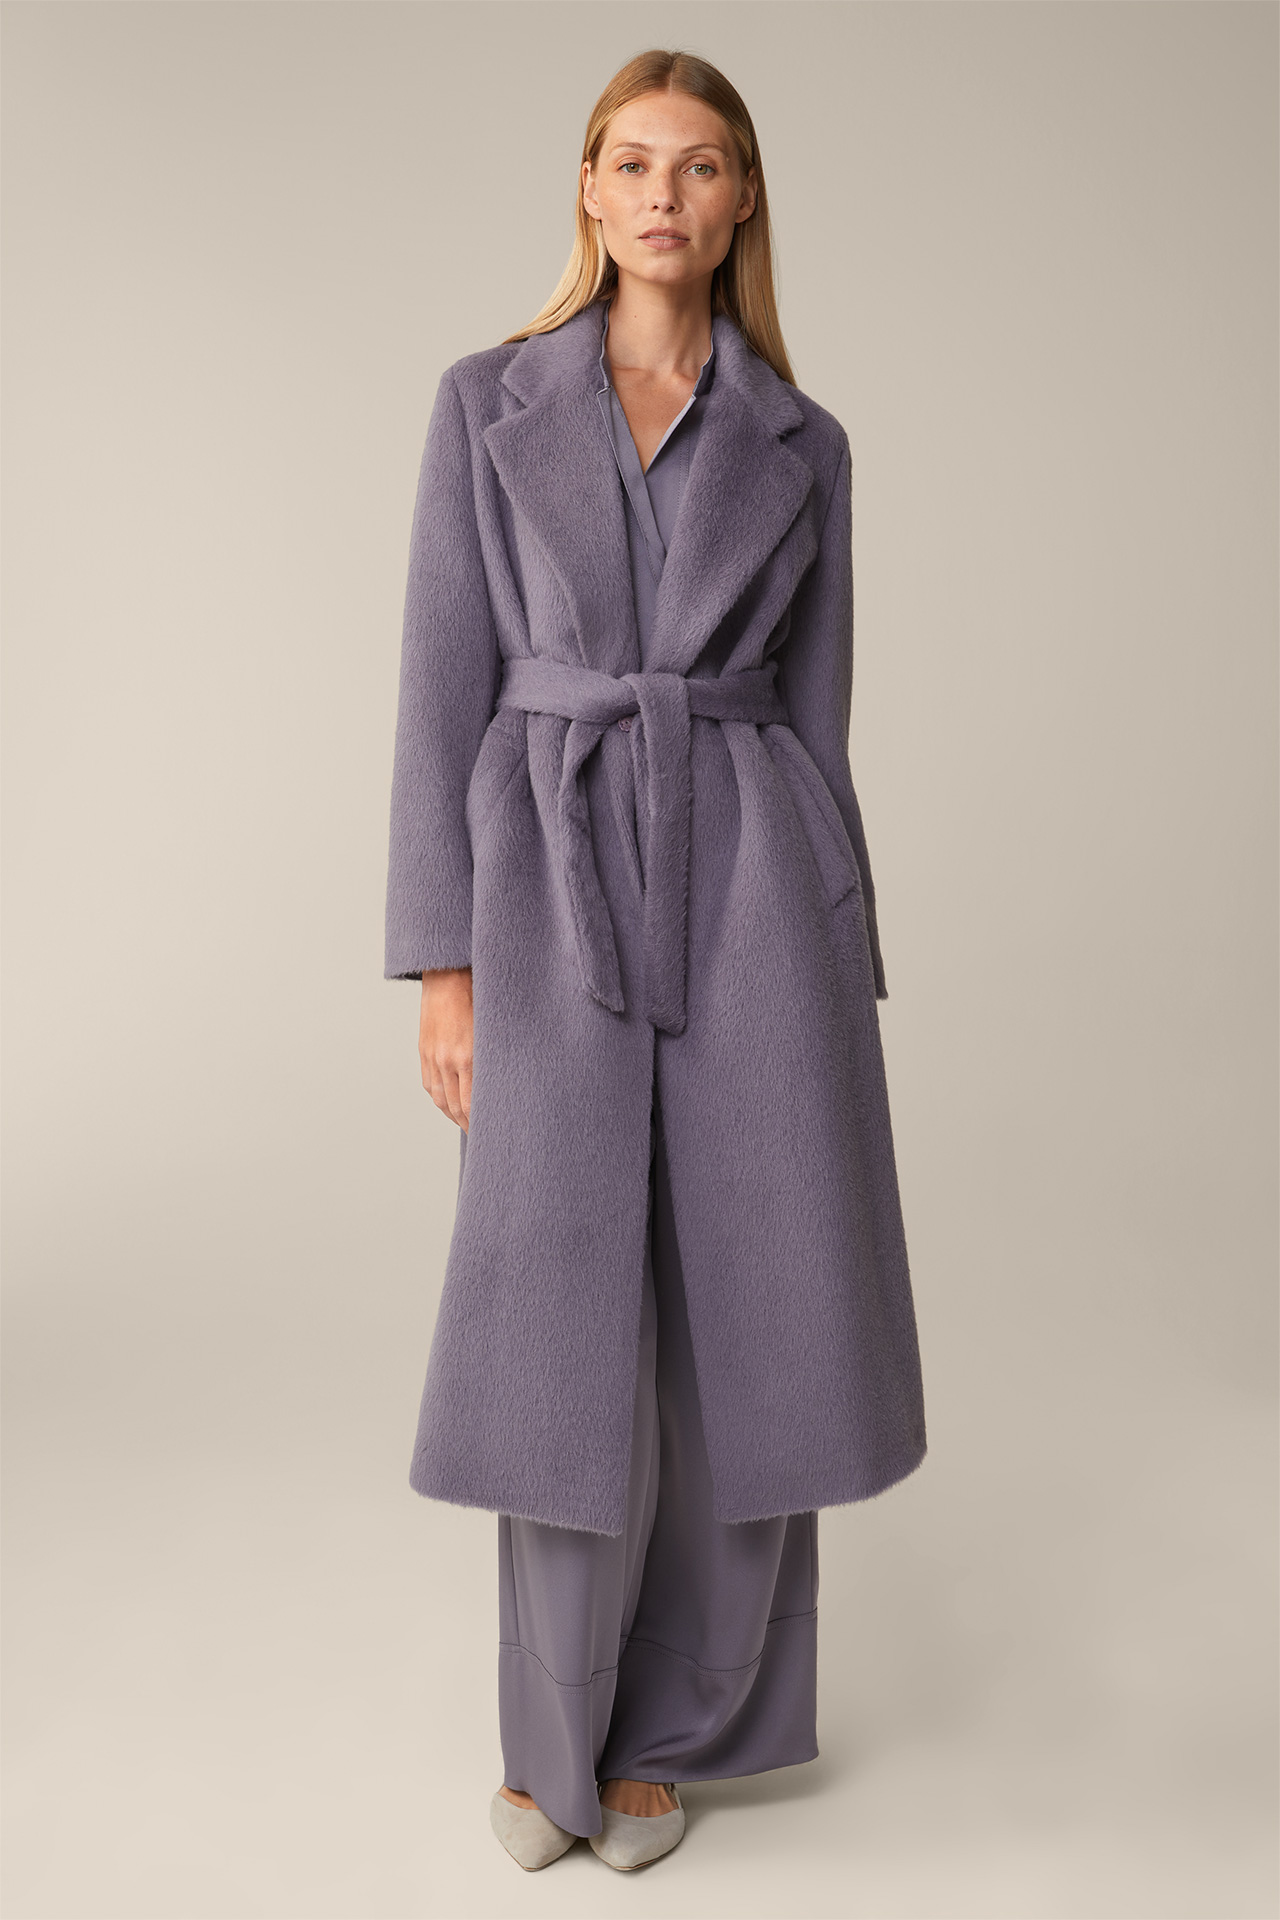 Manteau en alpaga et laine vierge, en mauve-violet